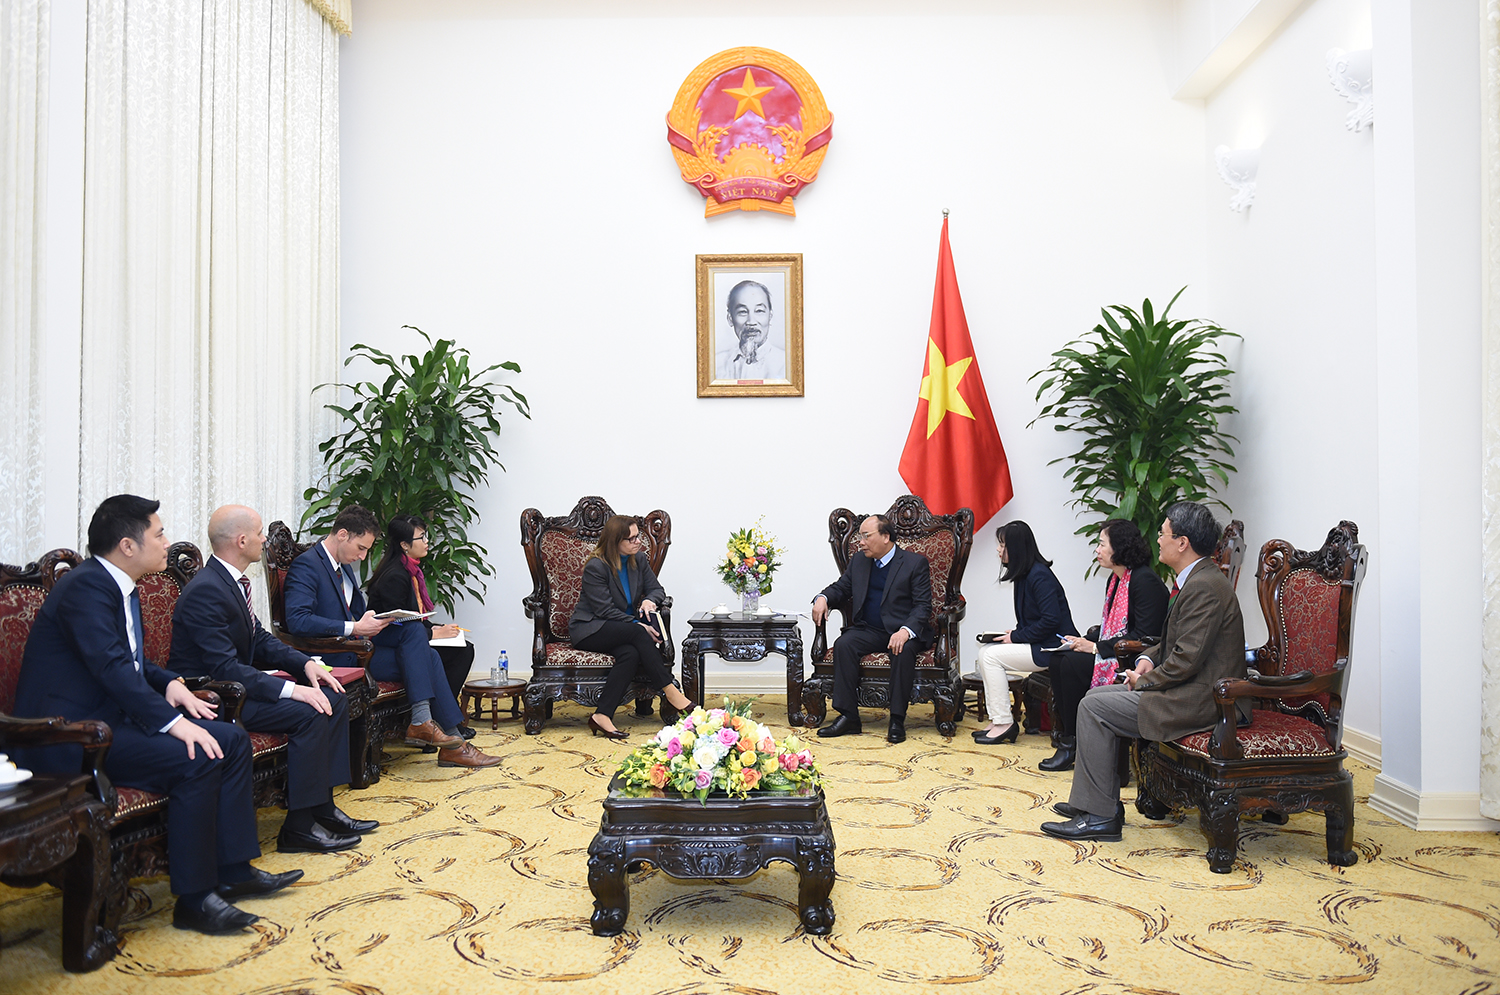  Thủ tướng Nguyễn Xuân Phúc tiếp Đại sứ Israel tại Việt Nam Meirav Eilon Shahar. Ảnh: VGP